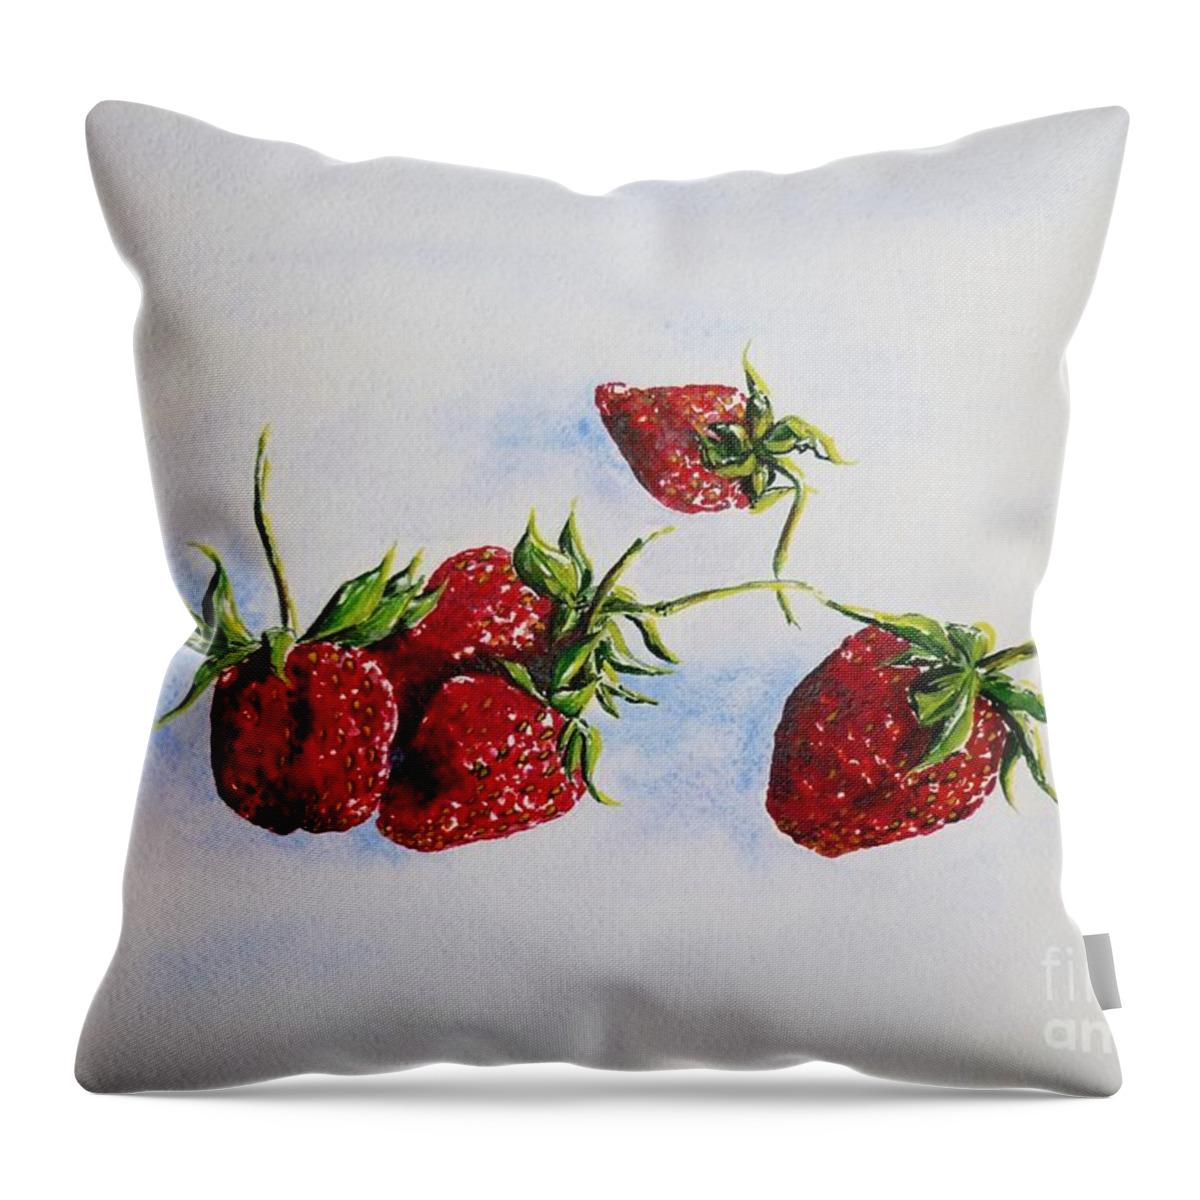 Strawberries Throw Pillow featuring the painting Strawberries by Zaira Dzhaubaeva